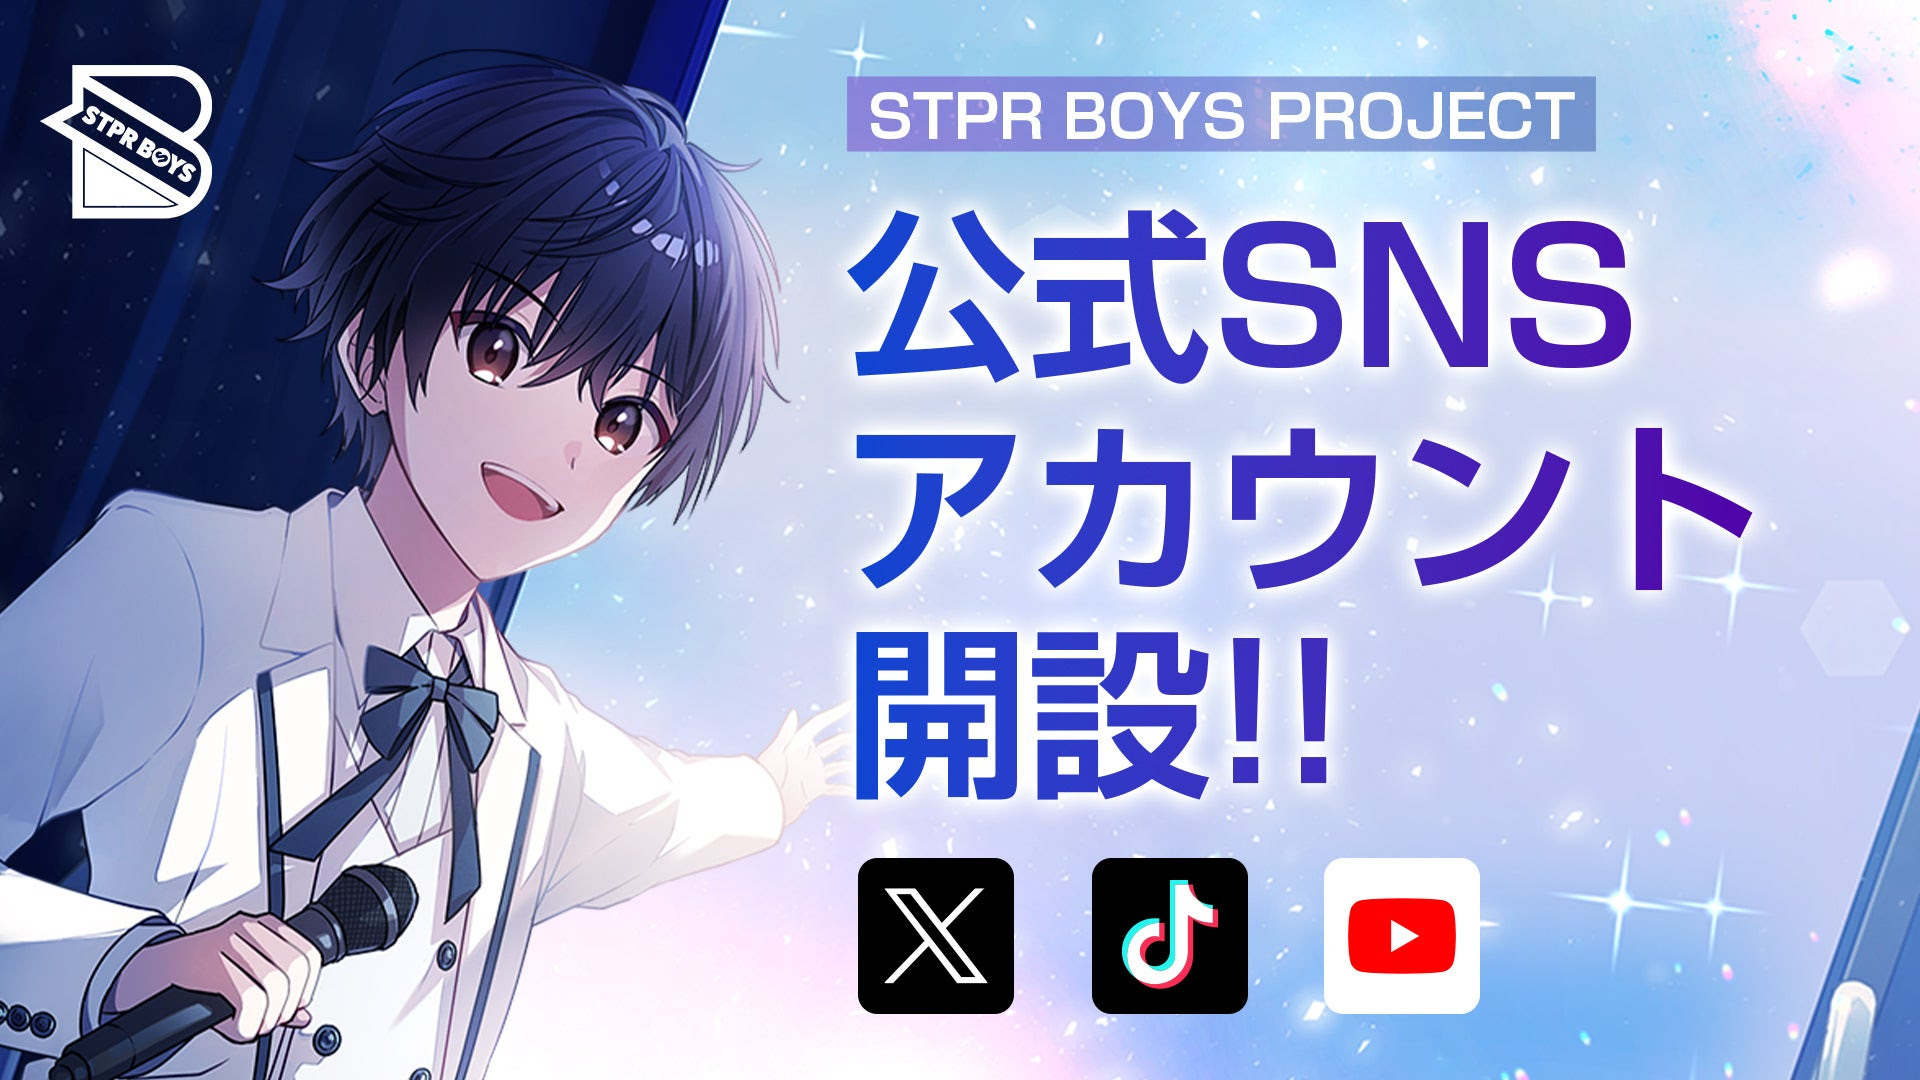 STPR、クリエイターコミュニティ「STPR BOYS PROJECT」の公式SNSアカウントを開設